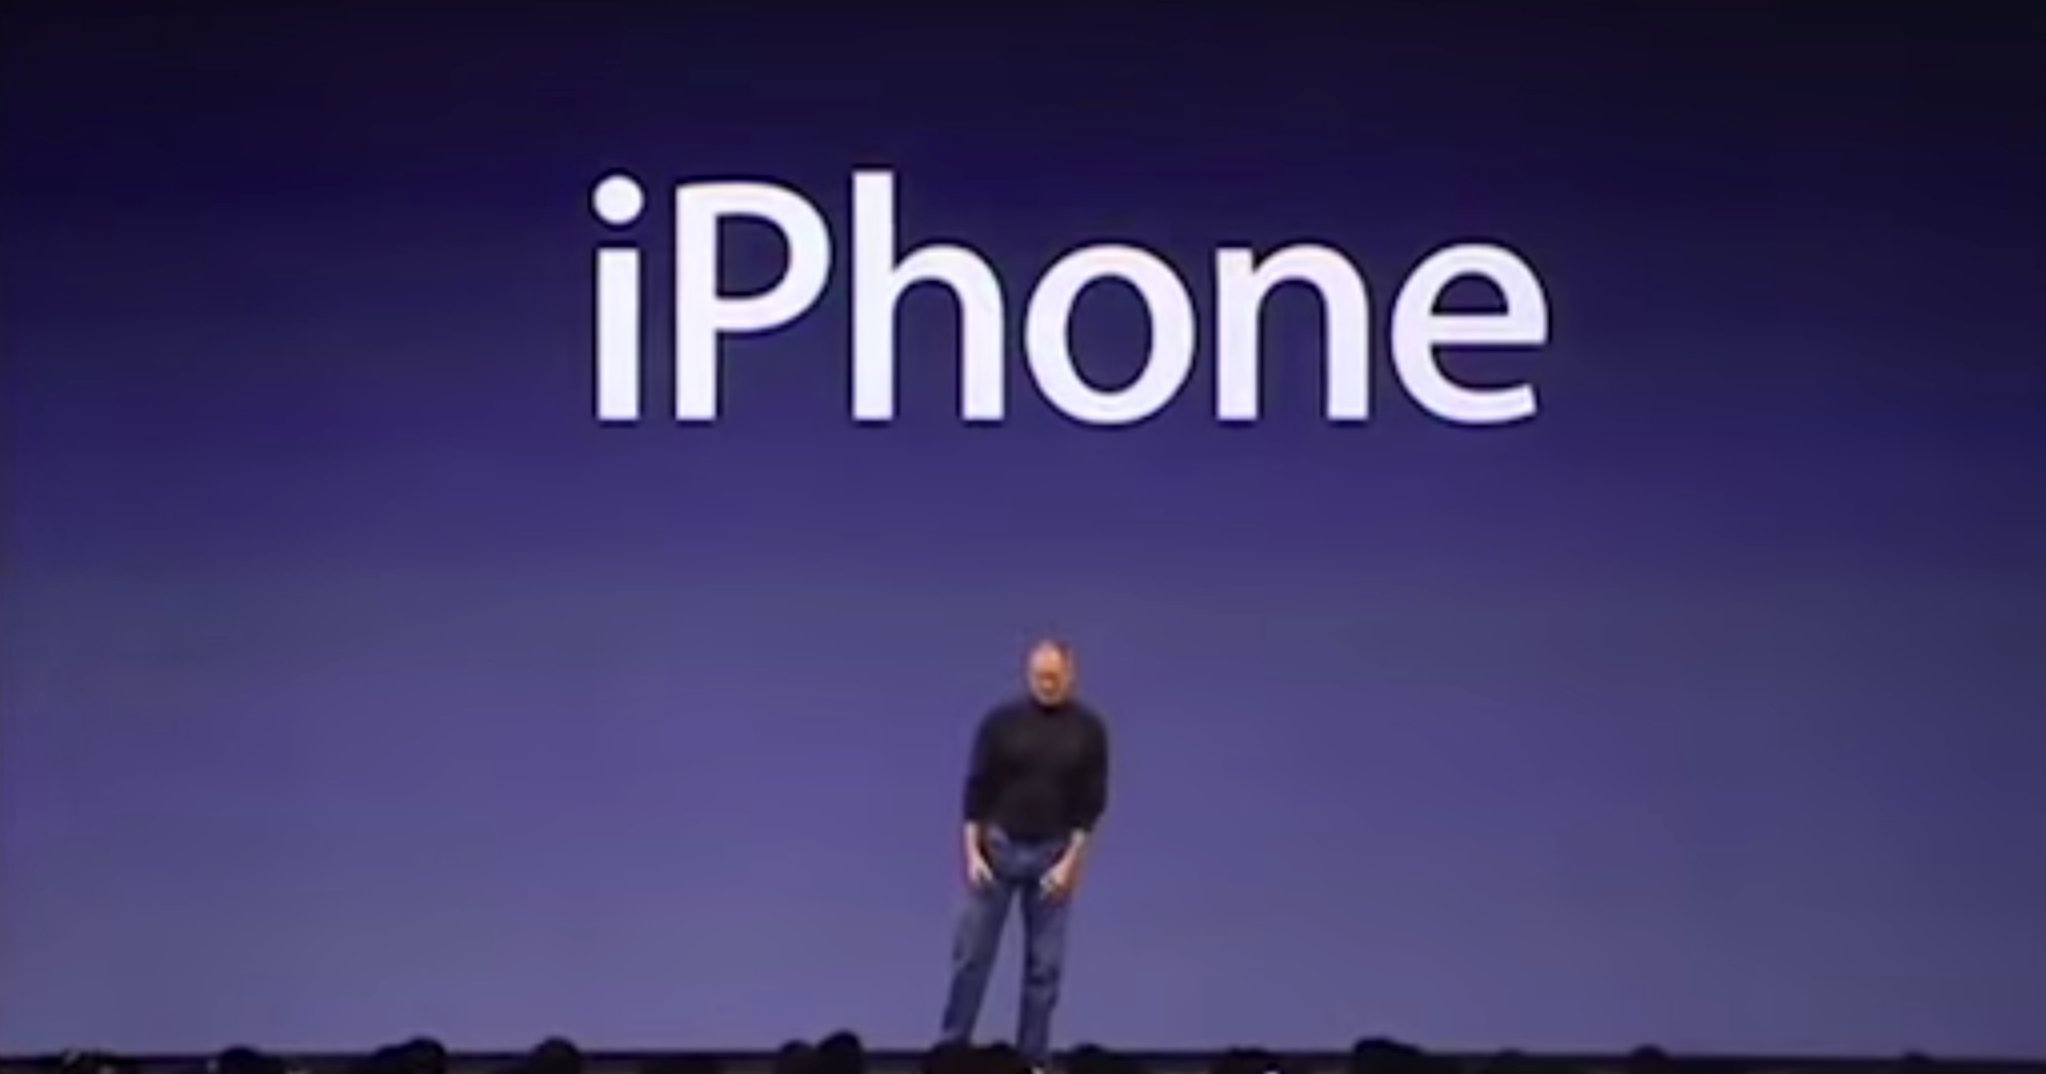 7 Jahre iPhone Geschichte: iPhone OS 1.0 bis iOS 8 im Video 5